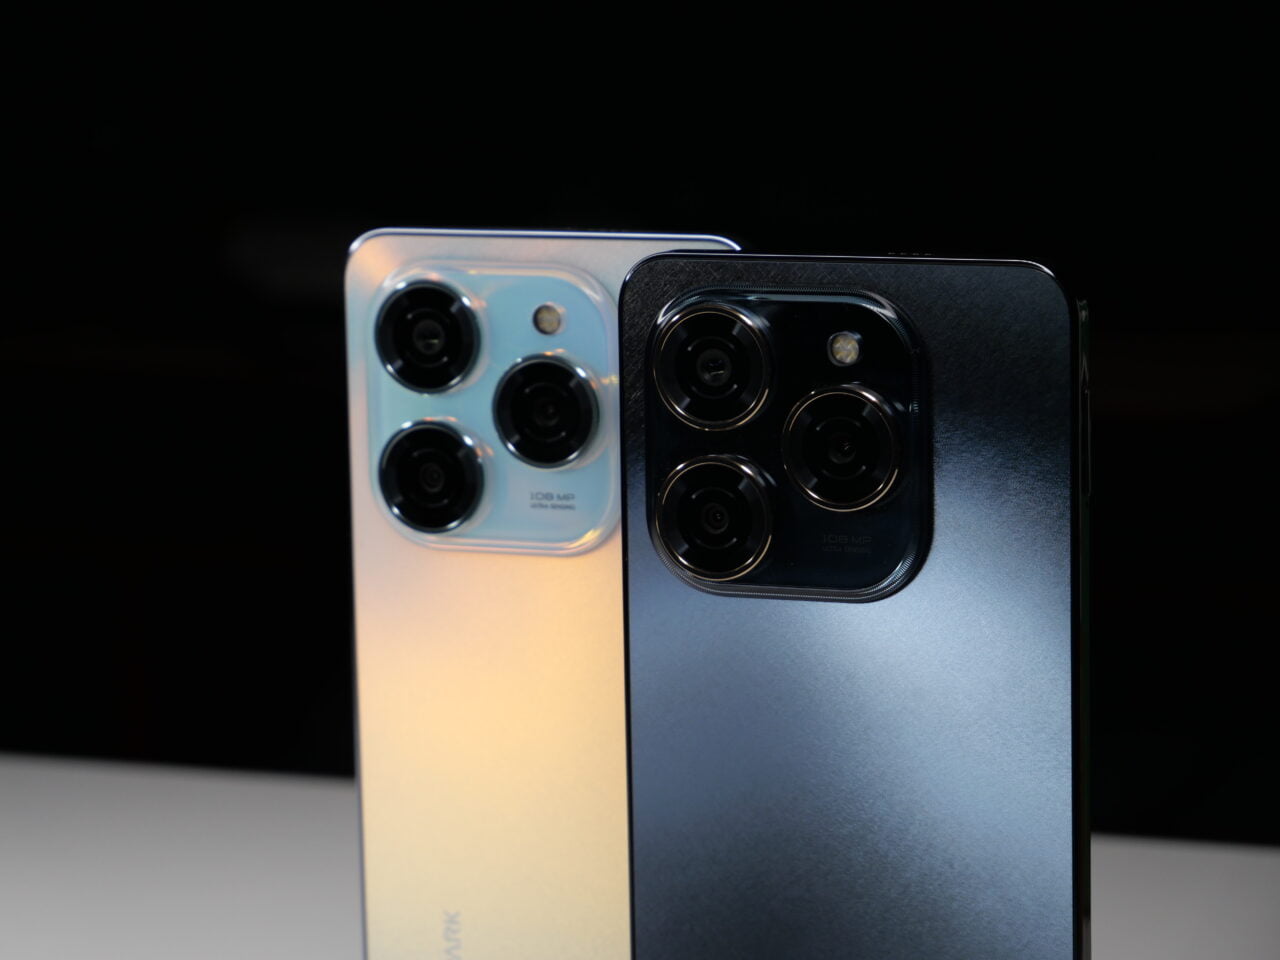 Dwa smartfony ustawione tyłem z widocznymi aparatami z czterema obiektywami, jeden w kolorze błękitno-złotym, drugi w czarno-szarym.